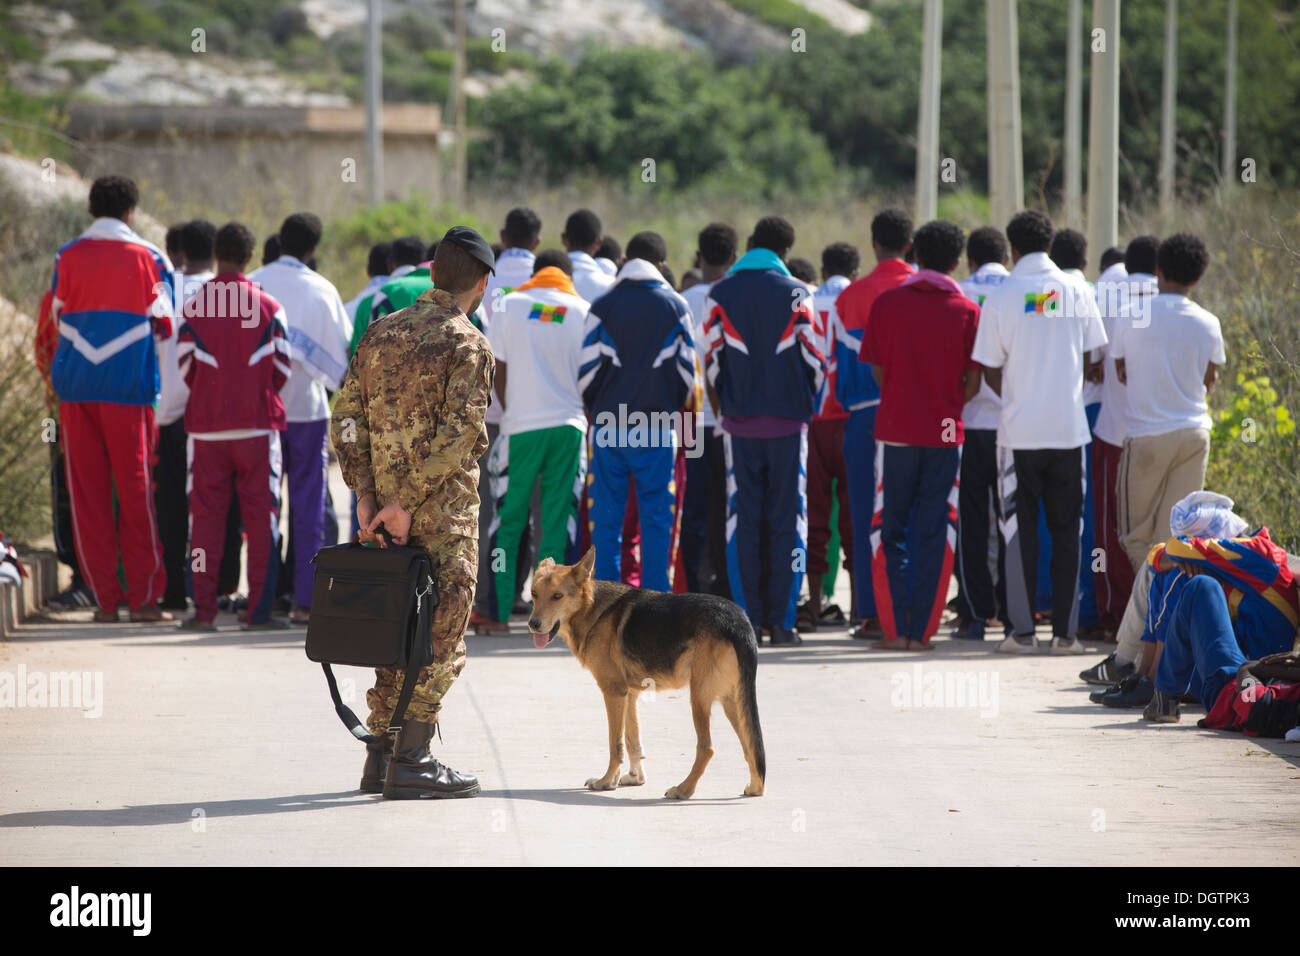 Les migrants érythréens sauvé de la mer près de Lampedusa, l'Italie se rassemblent pour la prière pour perdu des proches au cours d'une protestation silencieuse. Banque D'Images